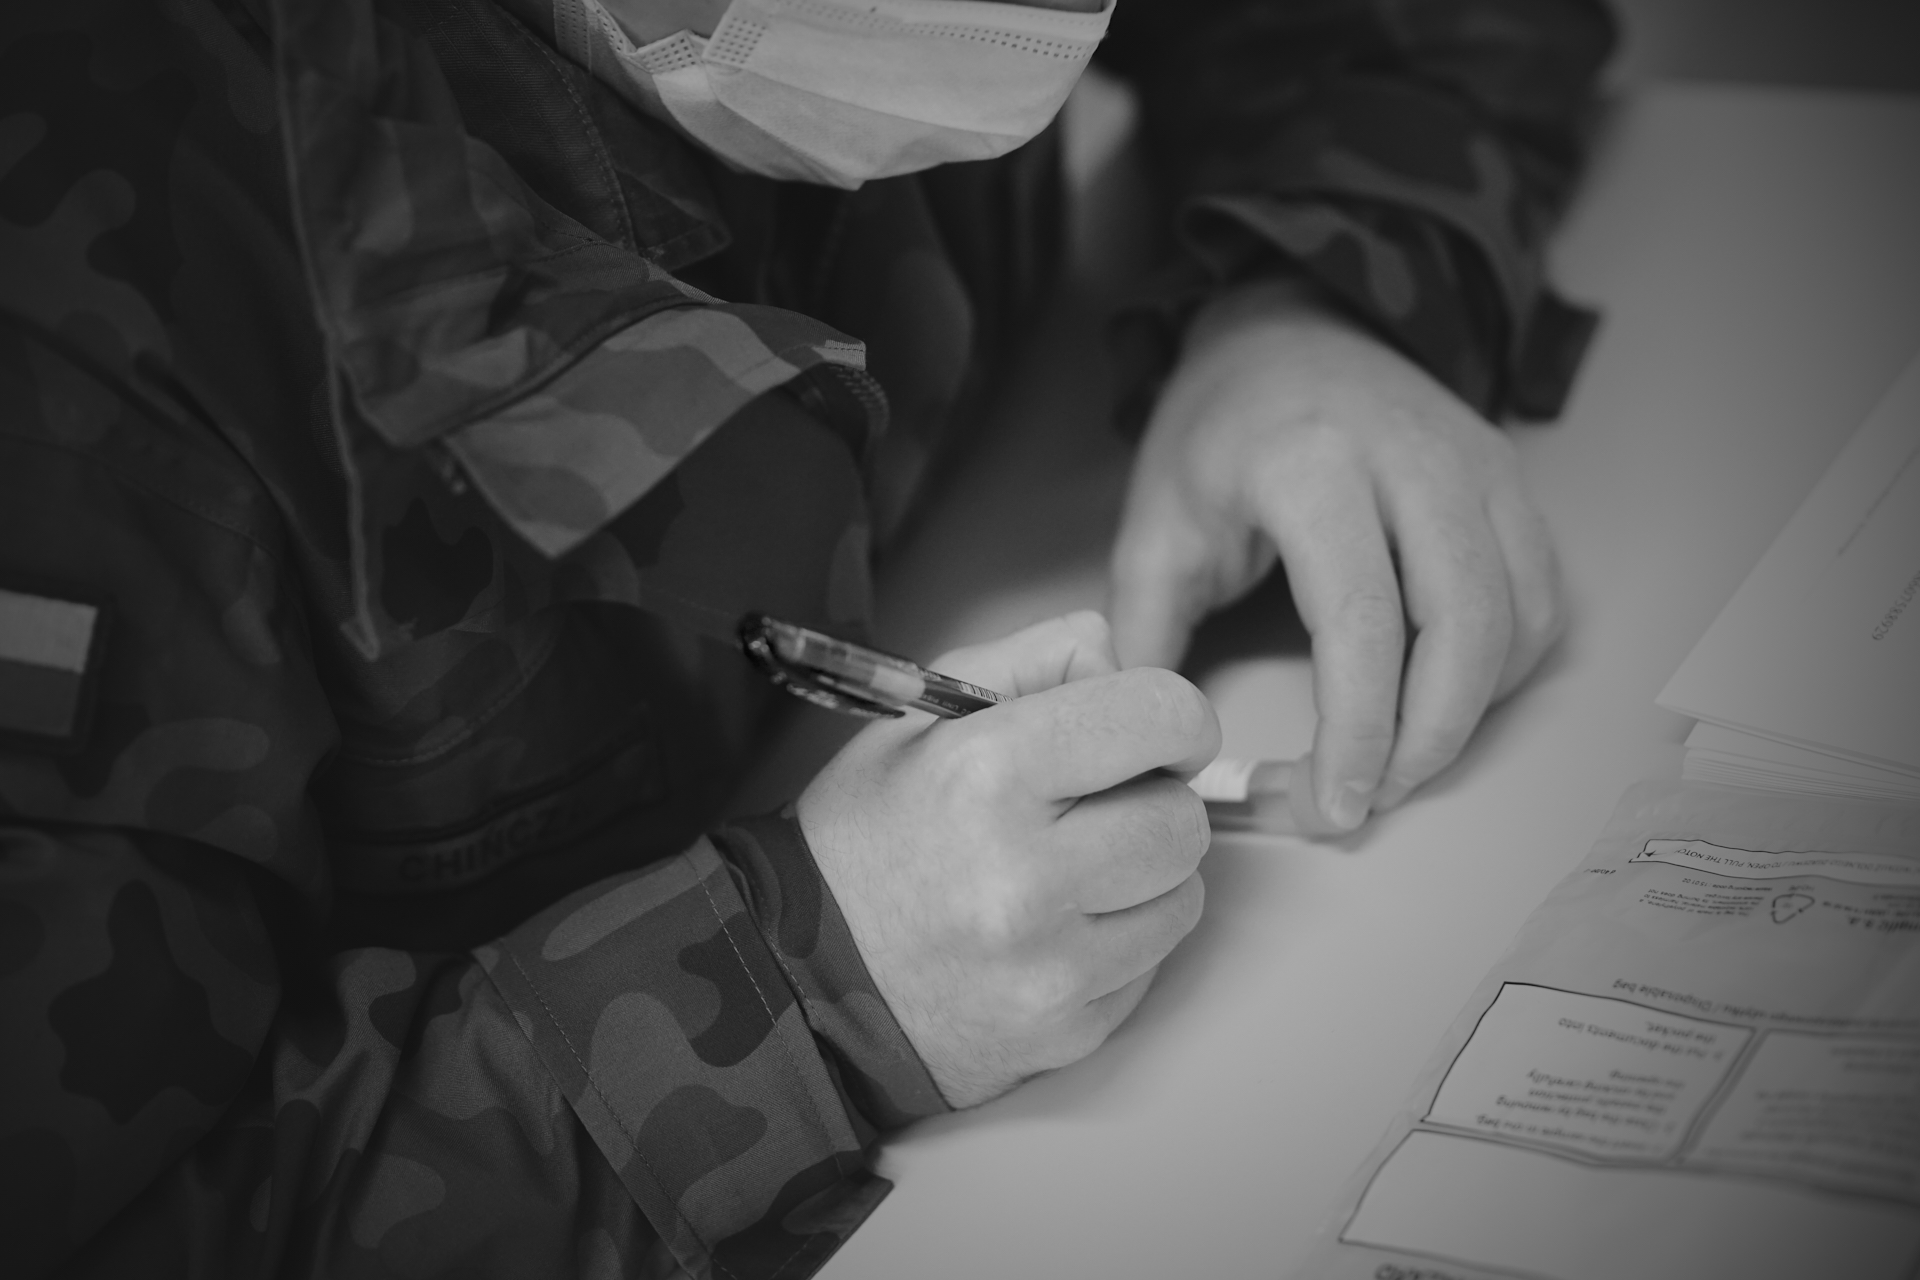 Jeden z żołnierzy w maseczce i z długopisem w ręku podpisuje próbkę. Przed nim na stole leży przezroczysty woreczek ochronny // fot. st. chor. szt. mar. Piotr Leoniak